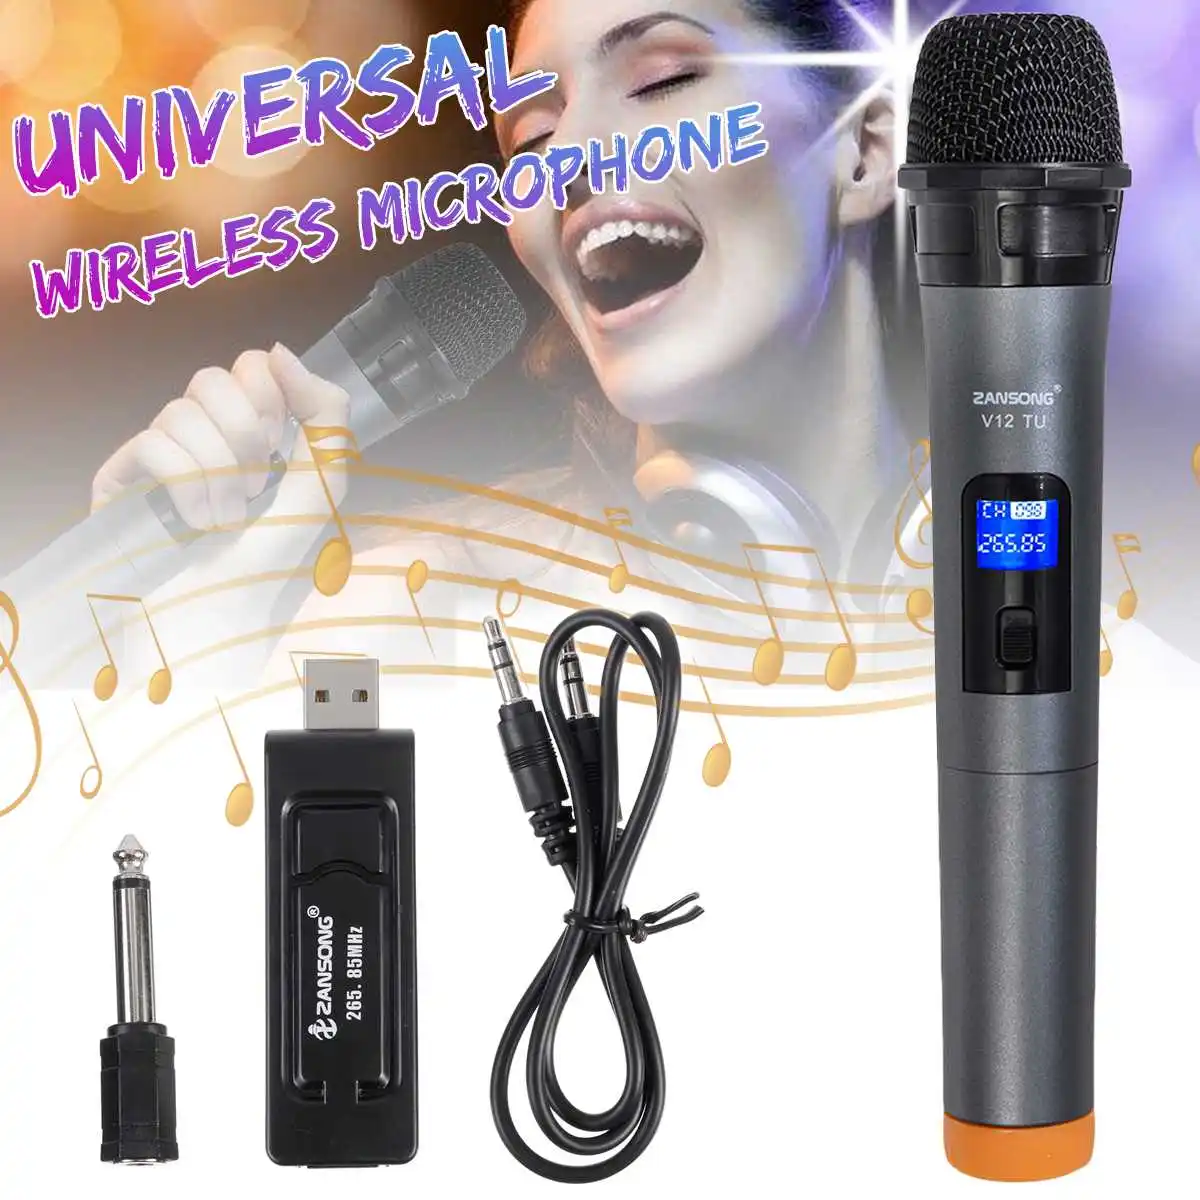 Universale Wireless UHF Professionale Microfono Palmare con Ricevitore USB Per Il Karaoke MIC Per La Chiesa Prestazioni Amplificatore